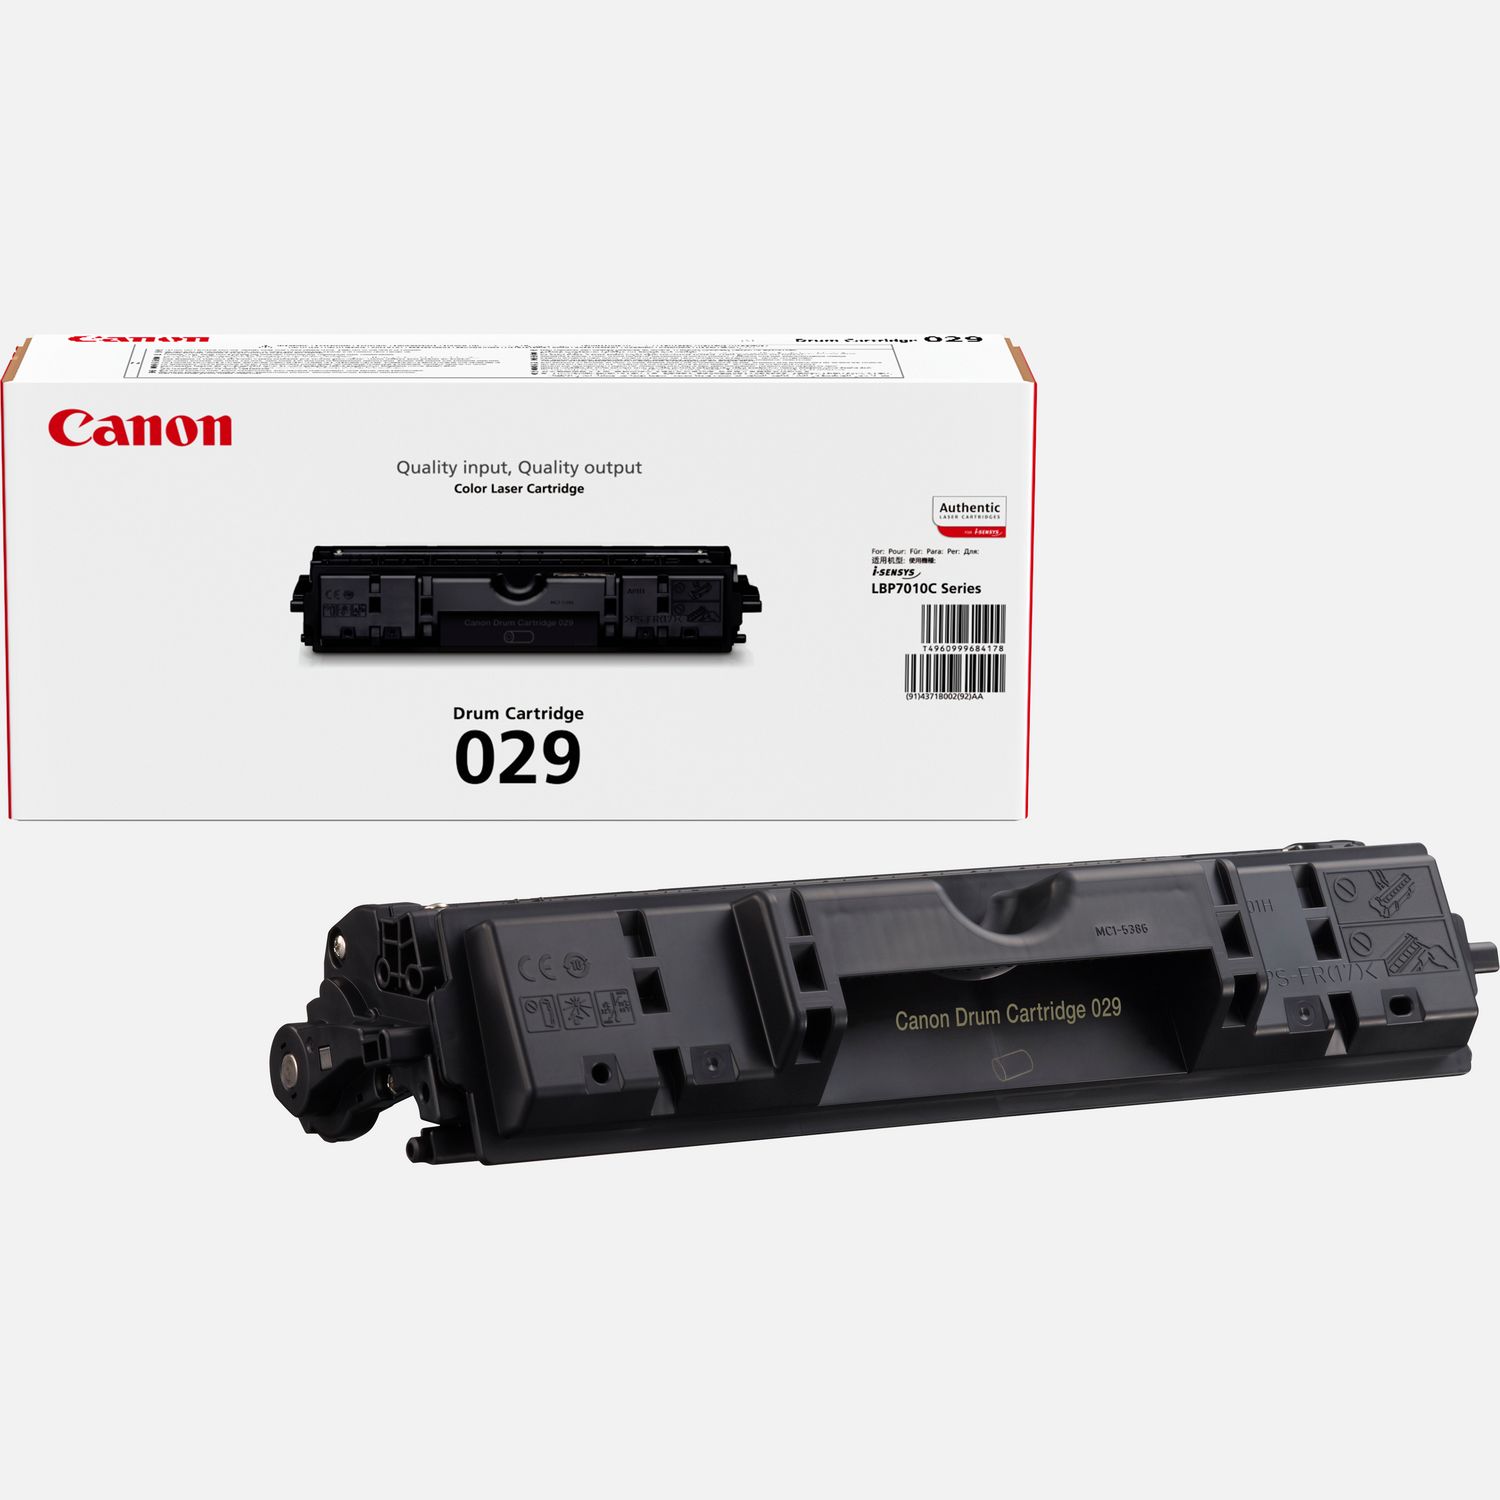 Canon 029 Drum Cartridge Unit